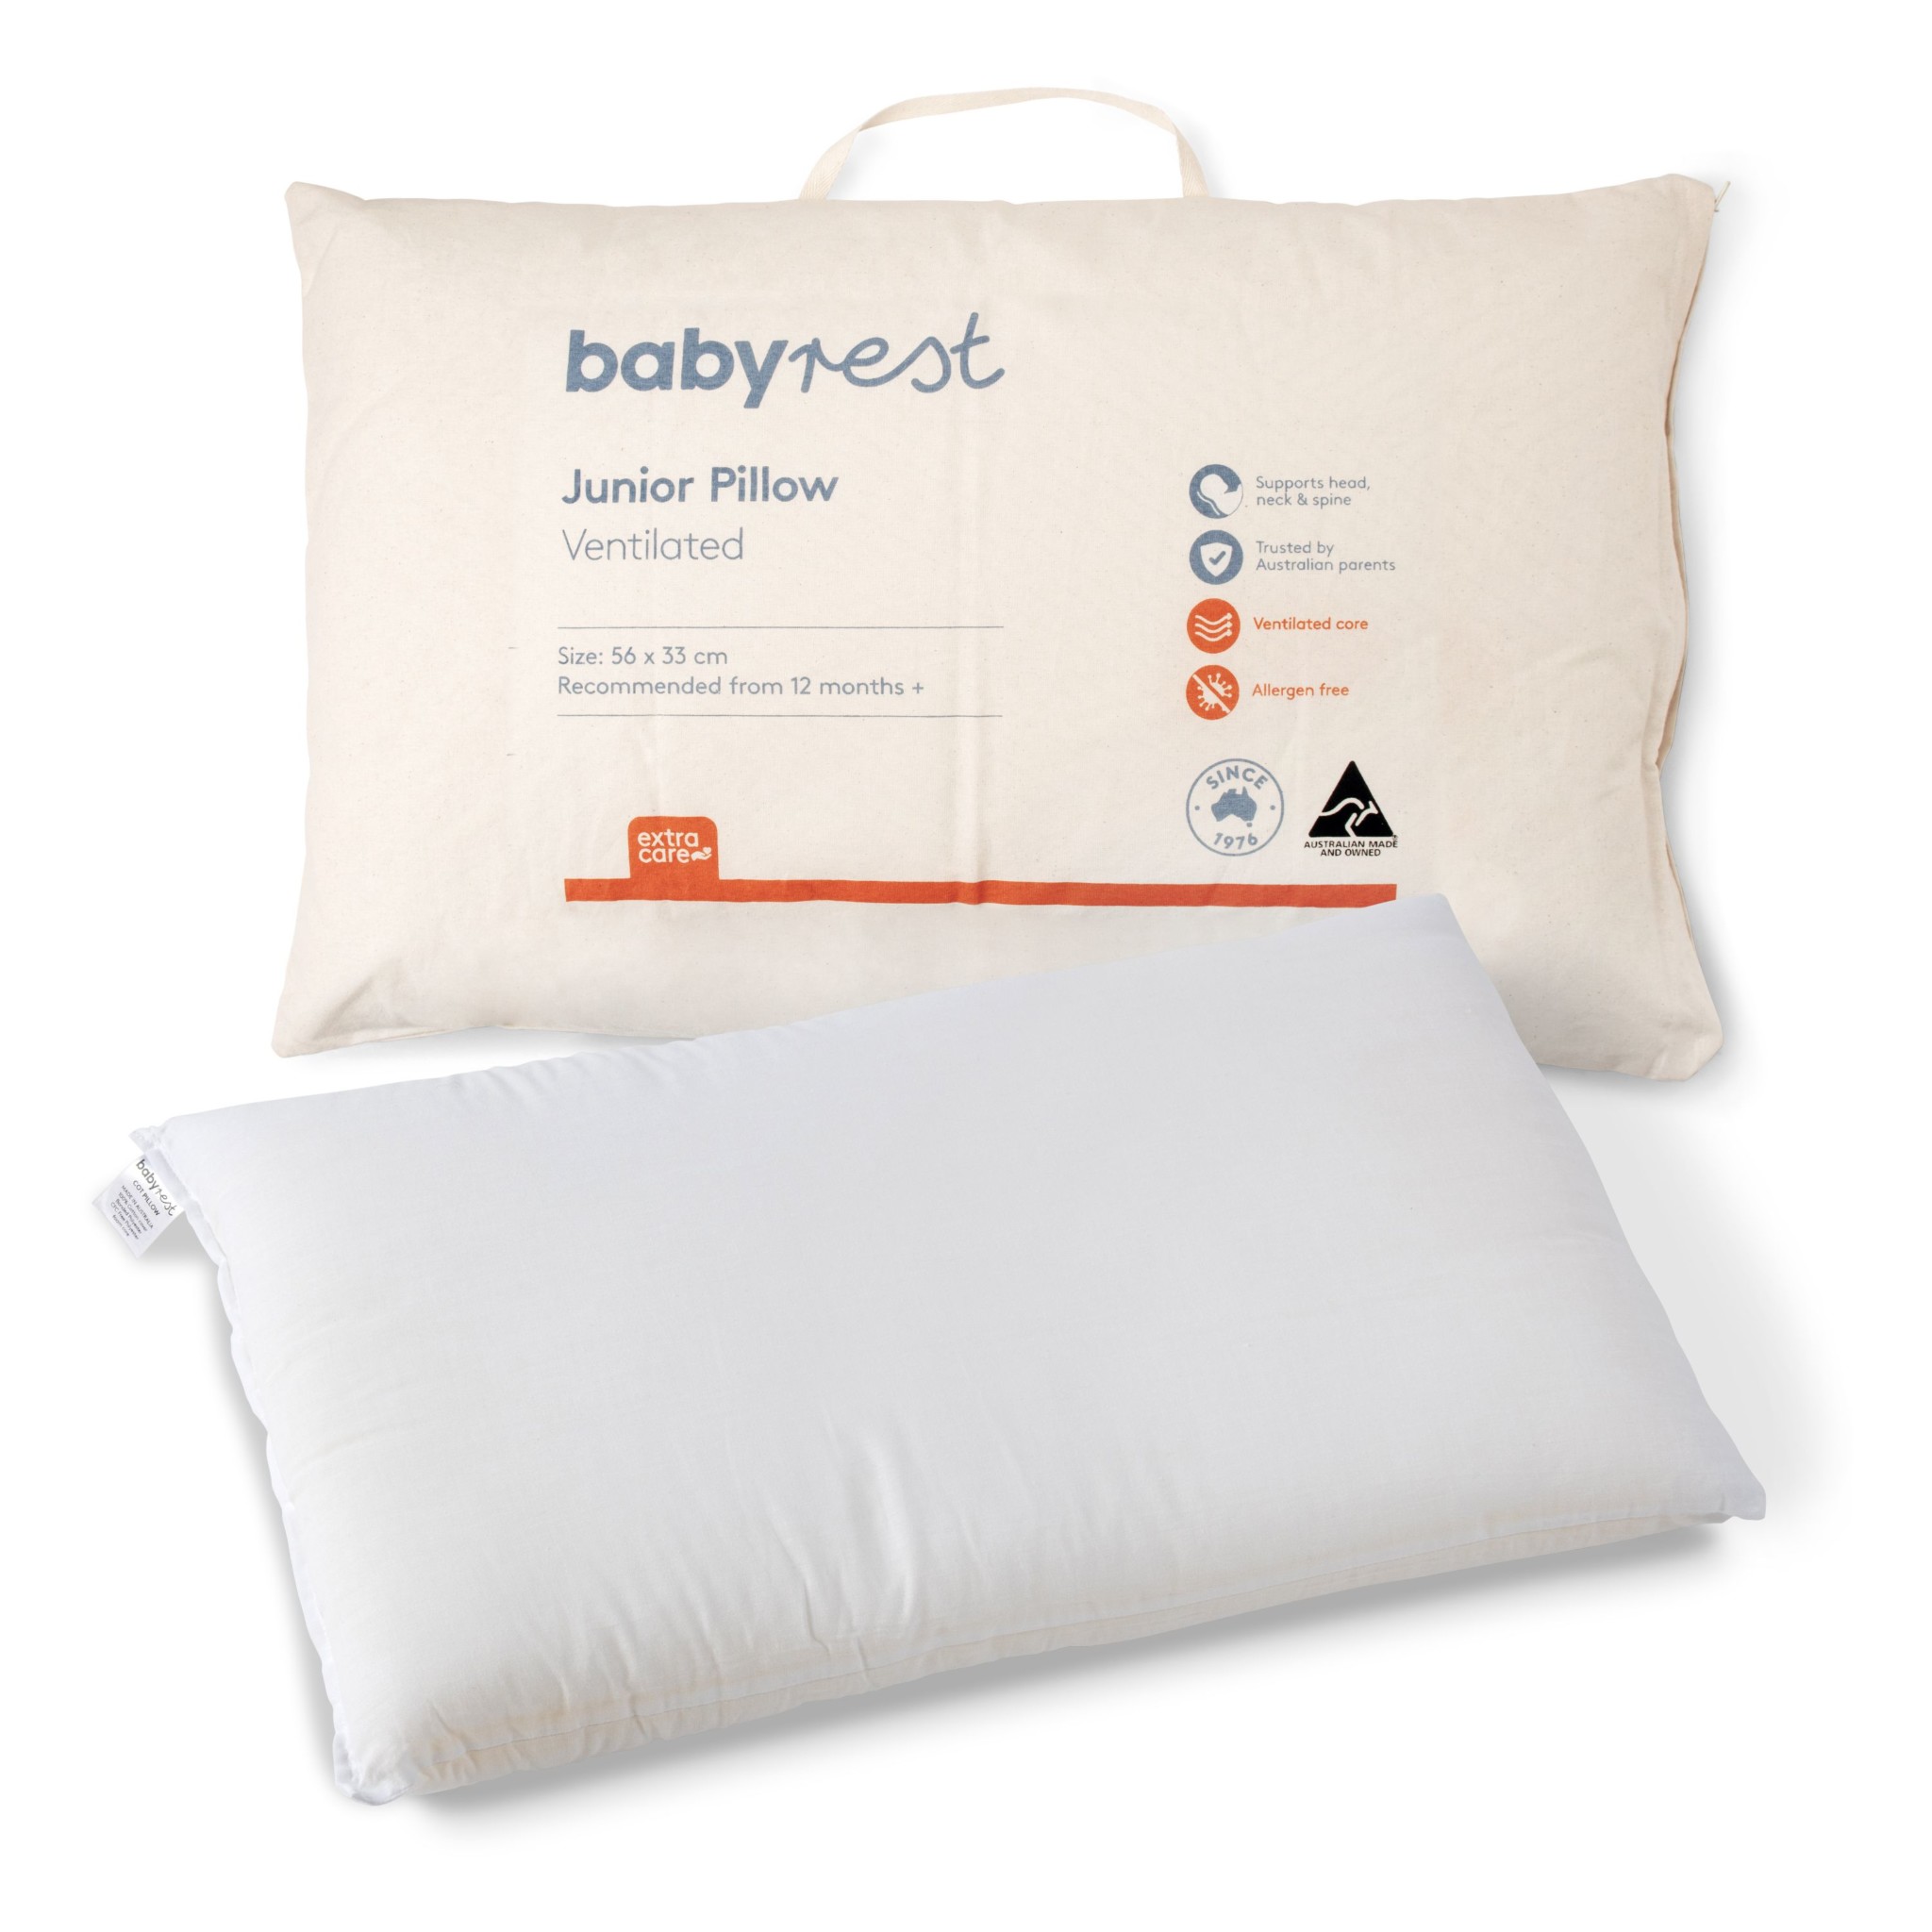 Babyrest Junior Pillow